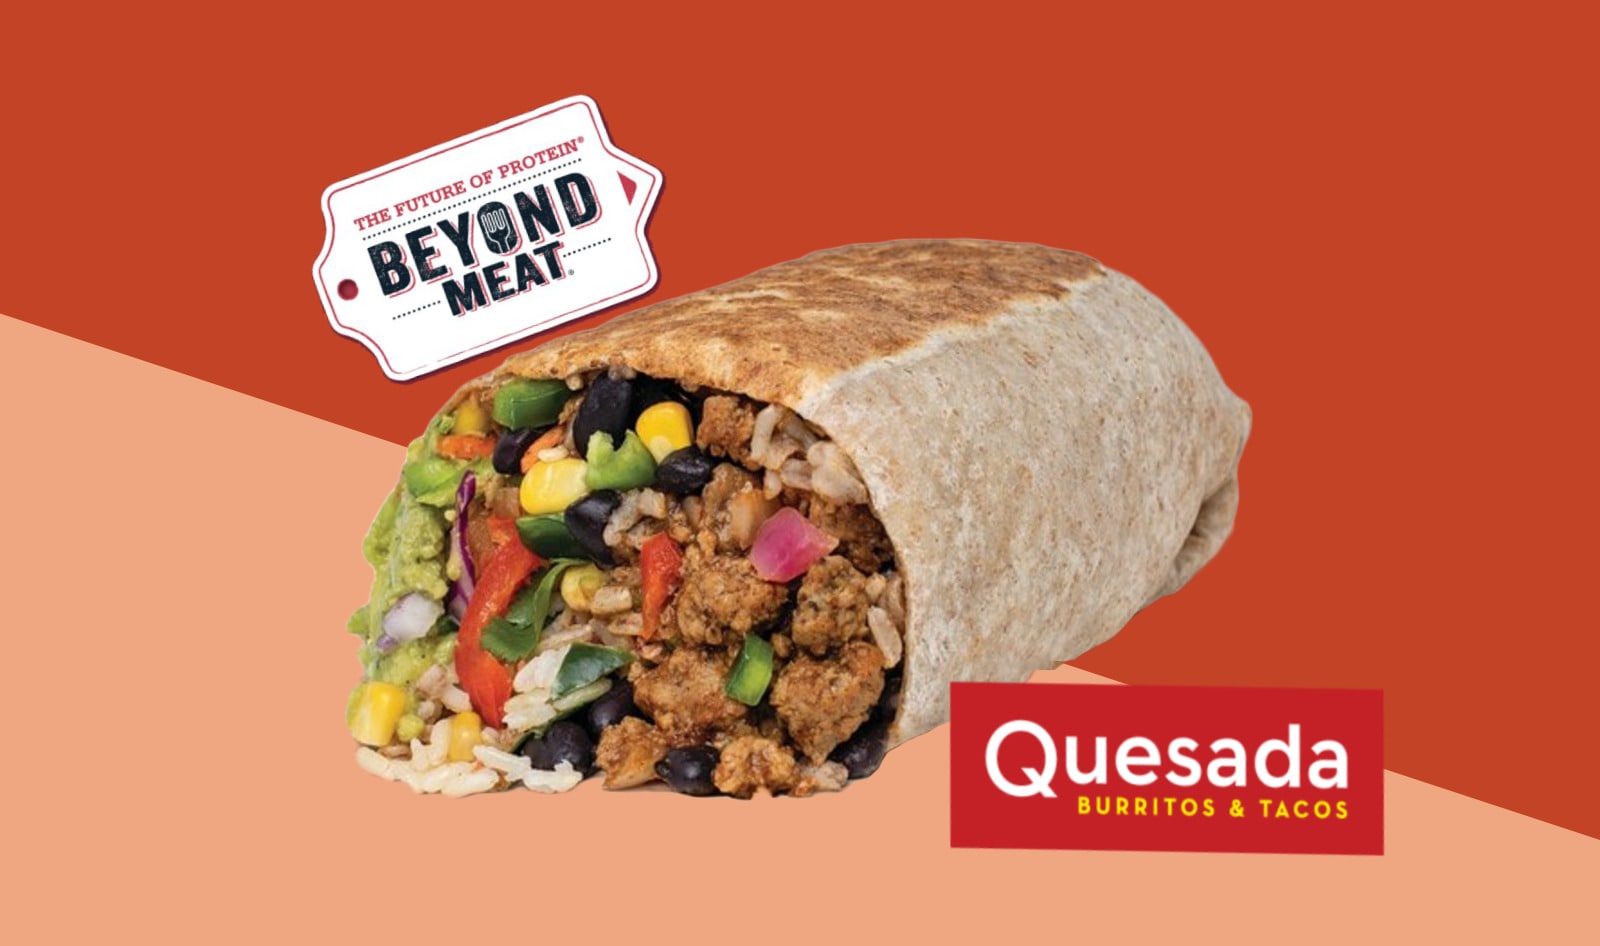 Vegan Beyond Meat Burritos Debut at 117 Quesada Locations Nationwide